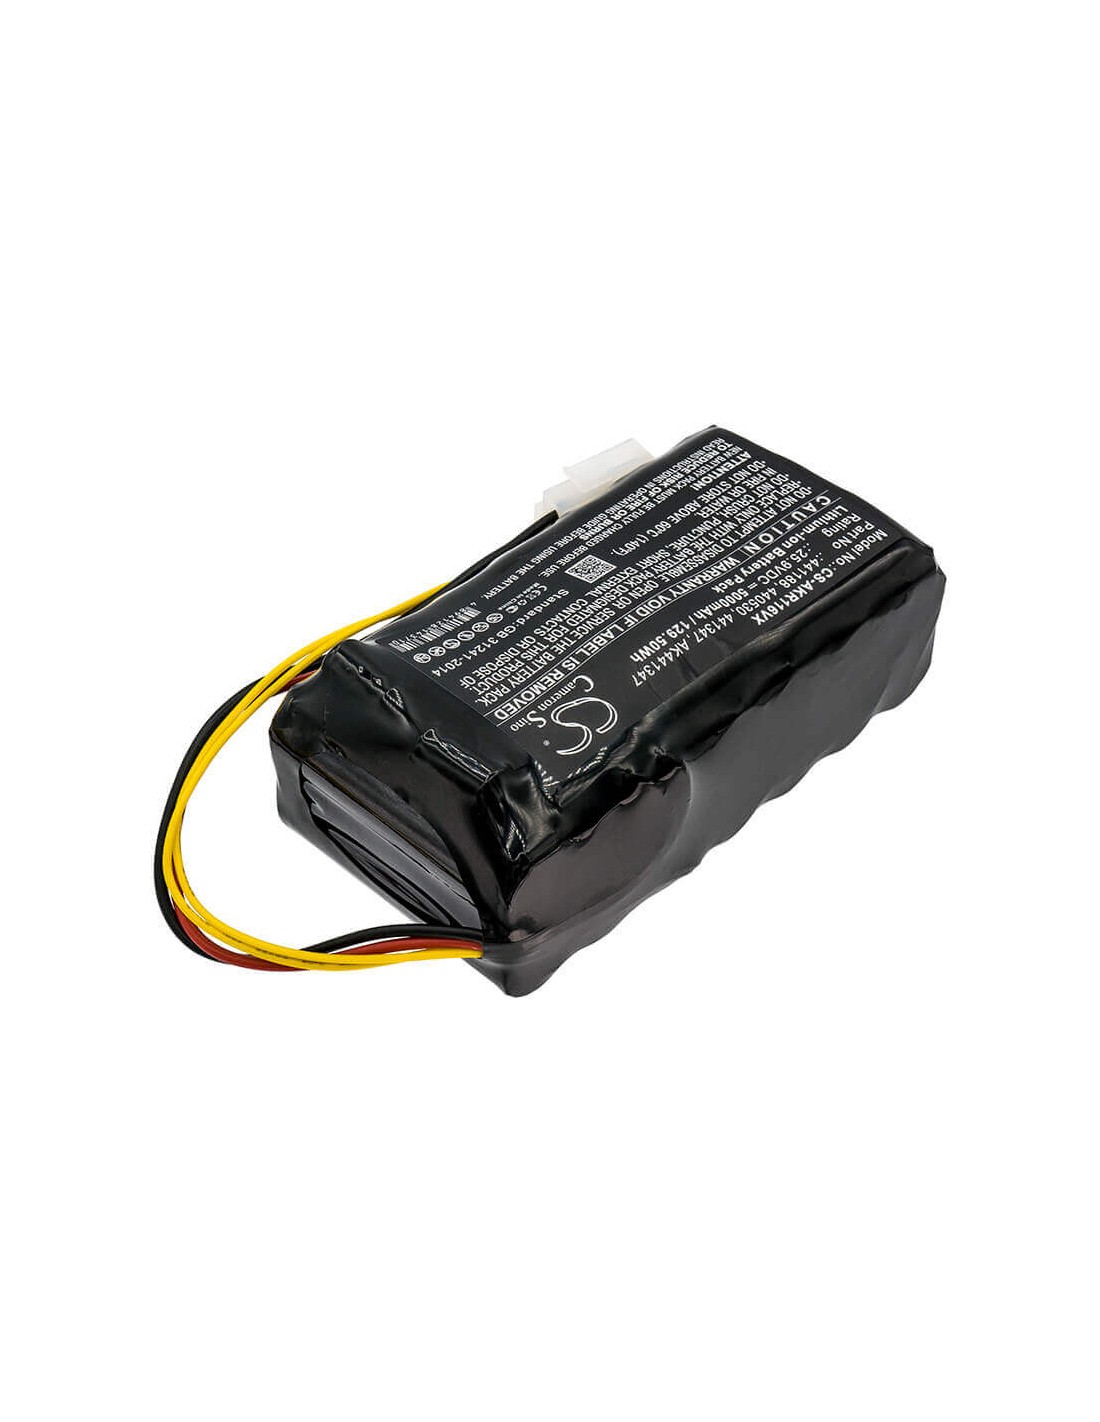 Battery for Al-ko, 119511, 440530, 441188 25.9V, 5000mAh - 129.50Wh